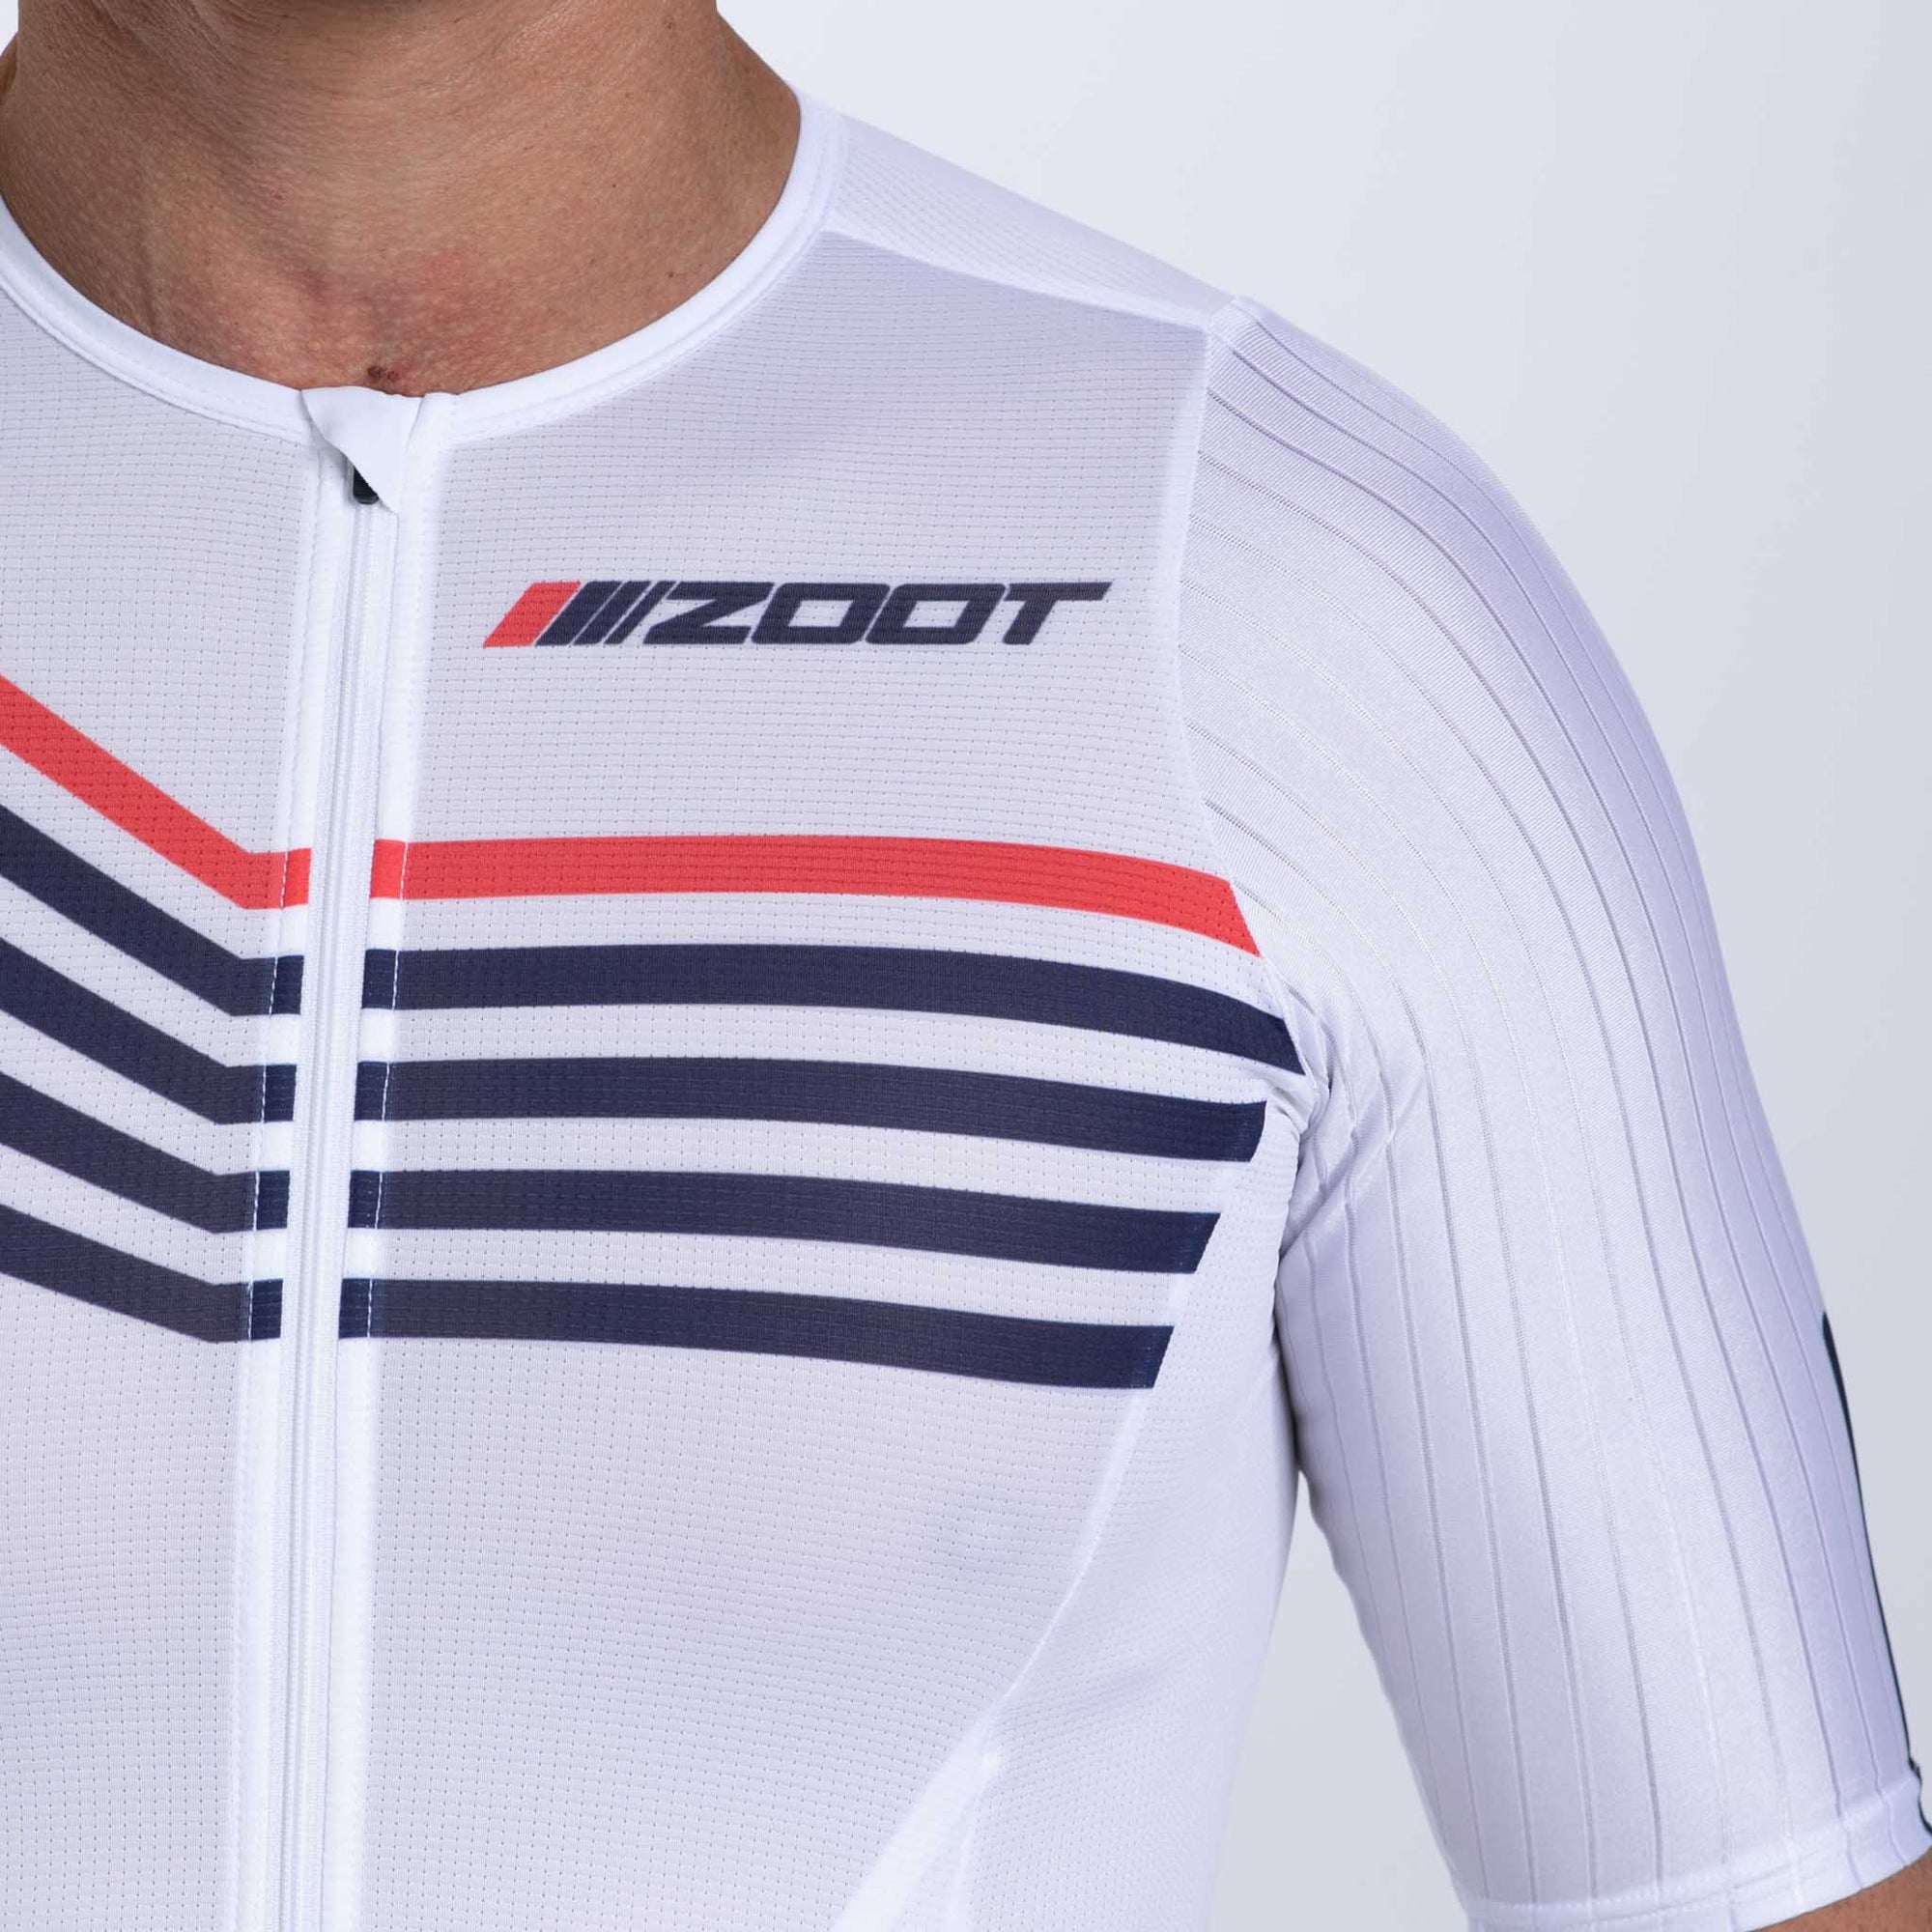 Zoot Sports TRI RACESUITS Men's Ultra Tri P1 Exos Racesuit - Cote d'Azur